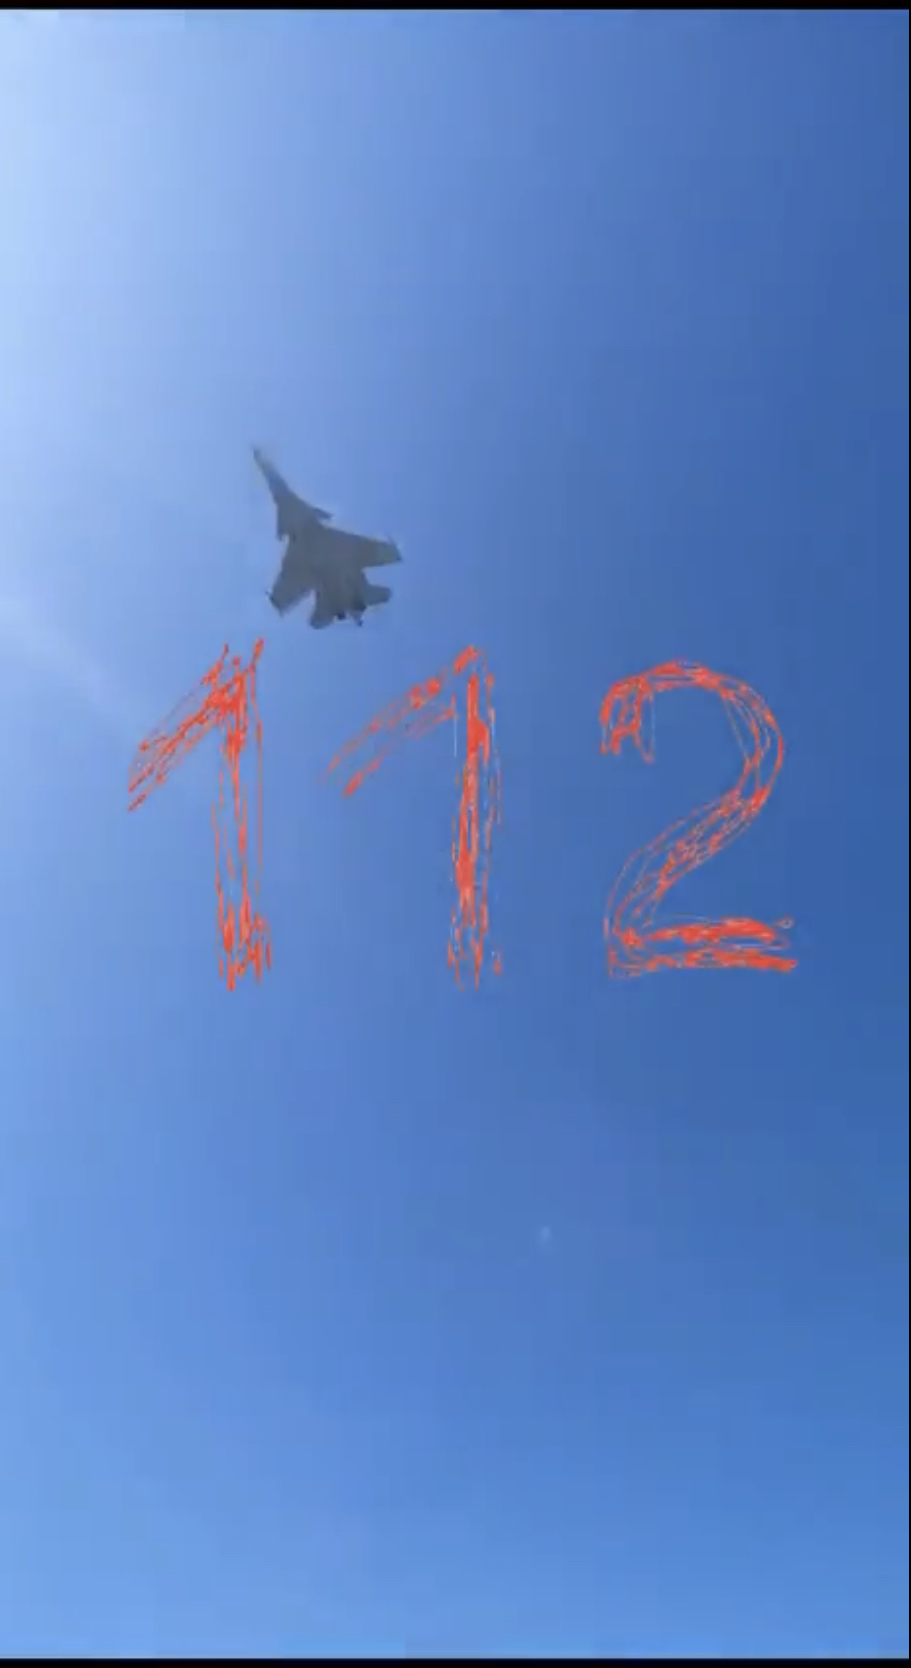 网传影片显示俄军苏-30战机出事时在天空中乱窜。 censor.net